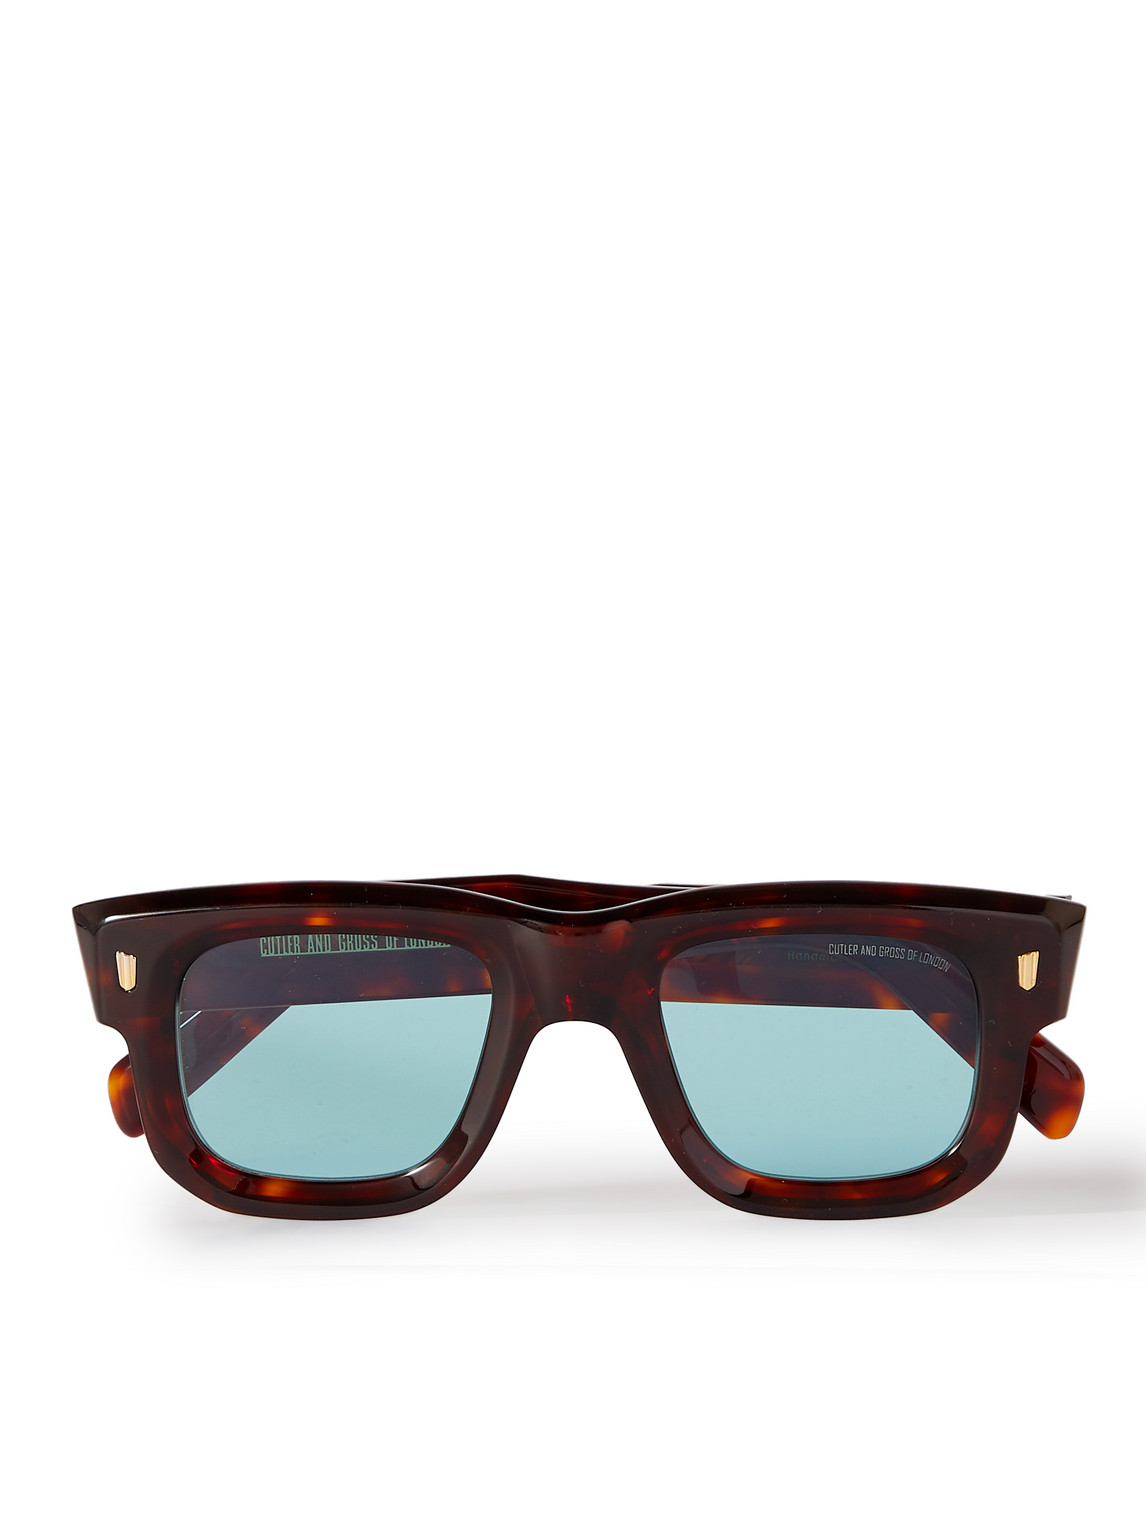 Cutler And Gross Tortoiseshell 1402 Sunglasses In Tort/lt Blue